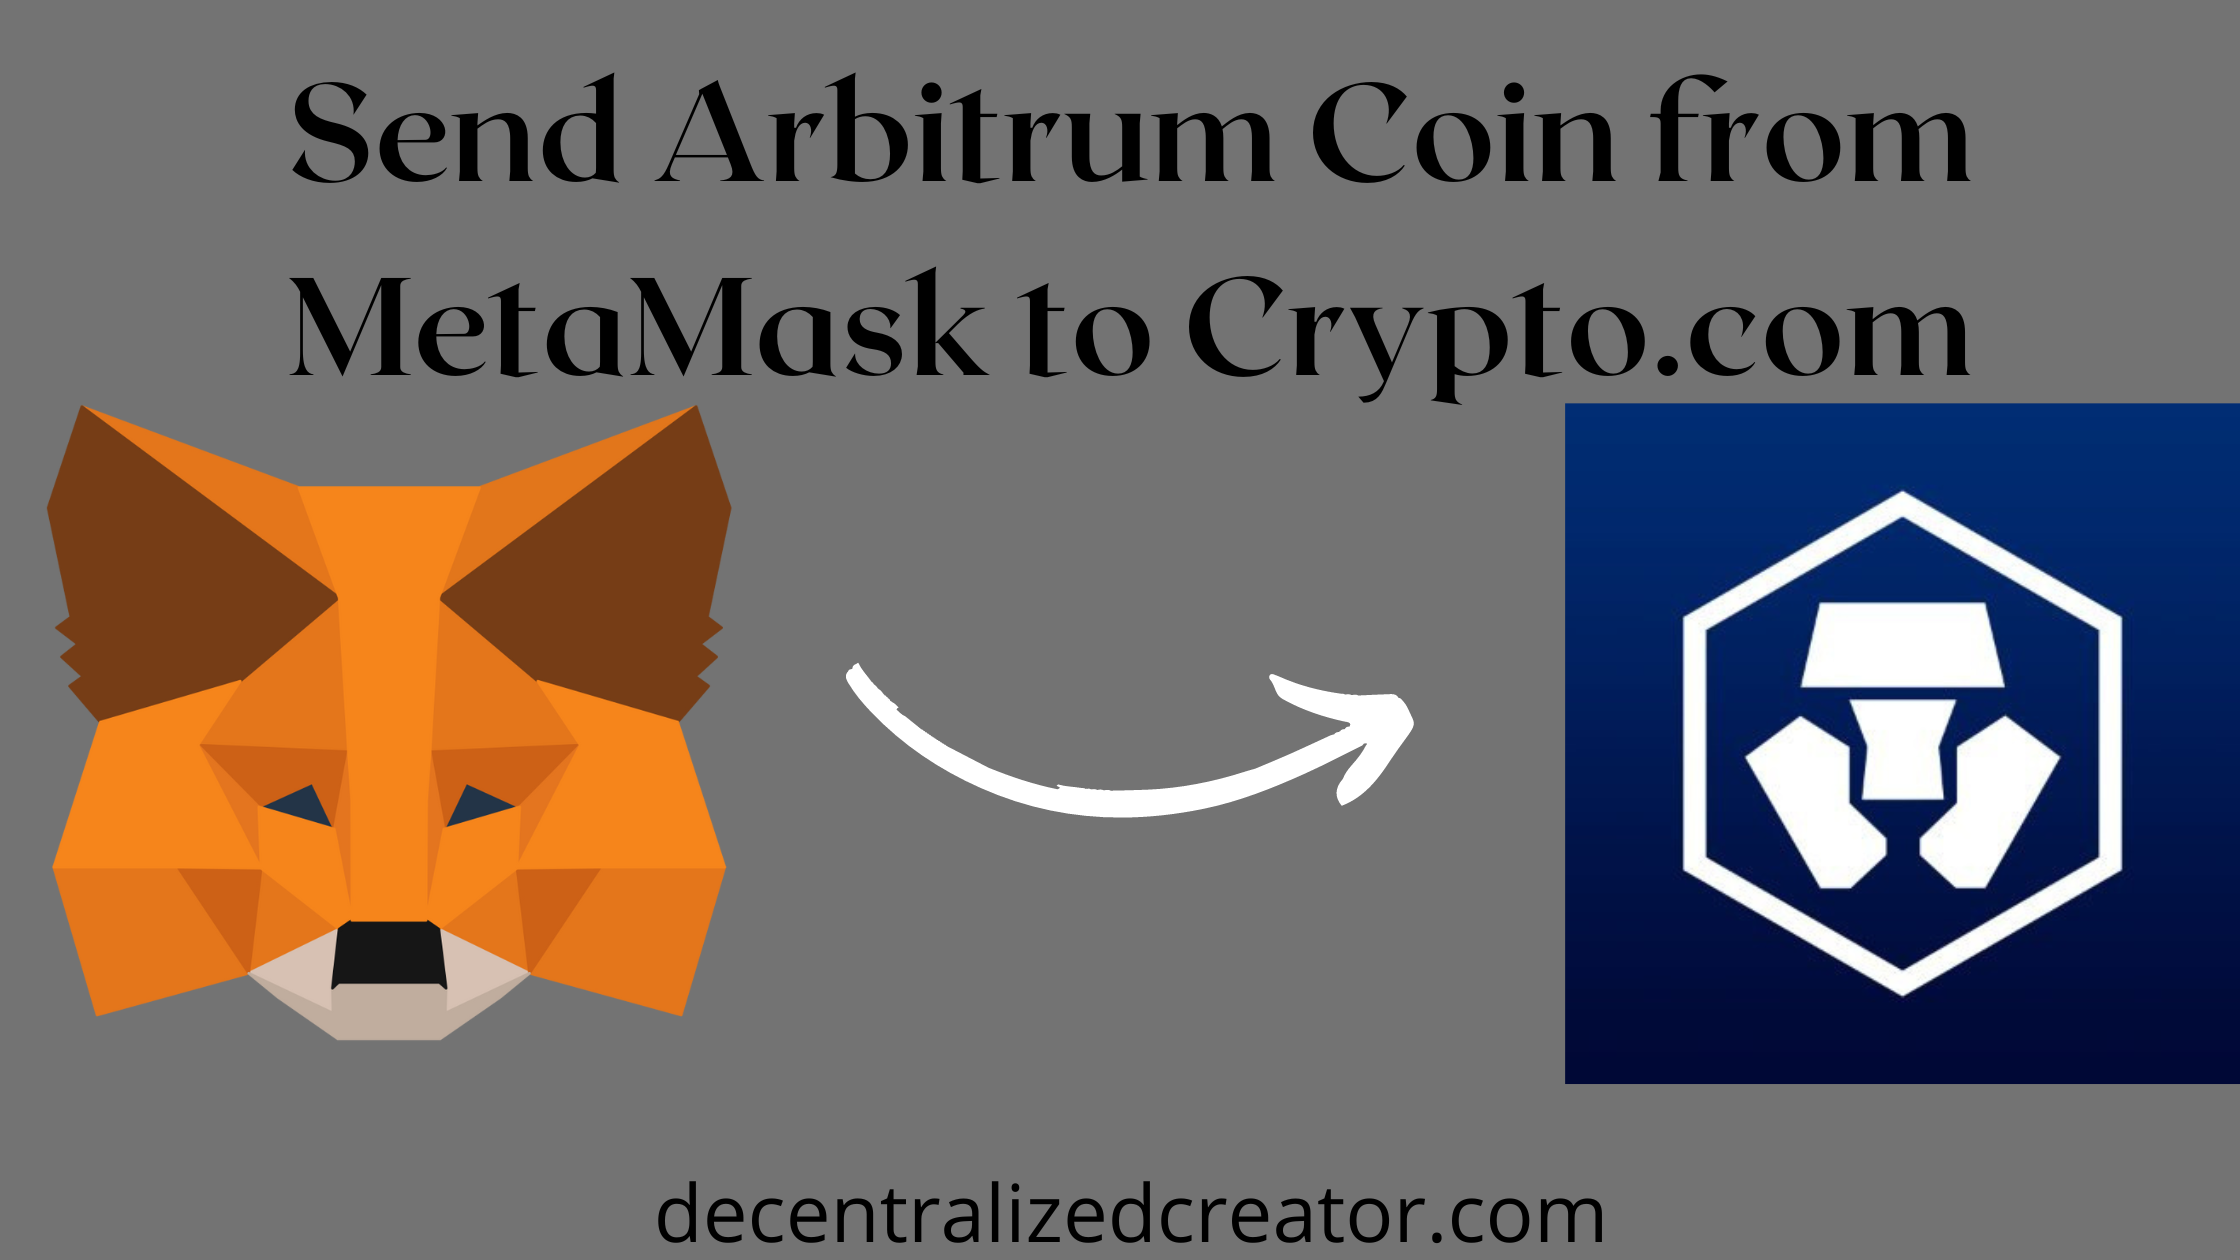 Arbiturm from MetaMask to Crypto.com